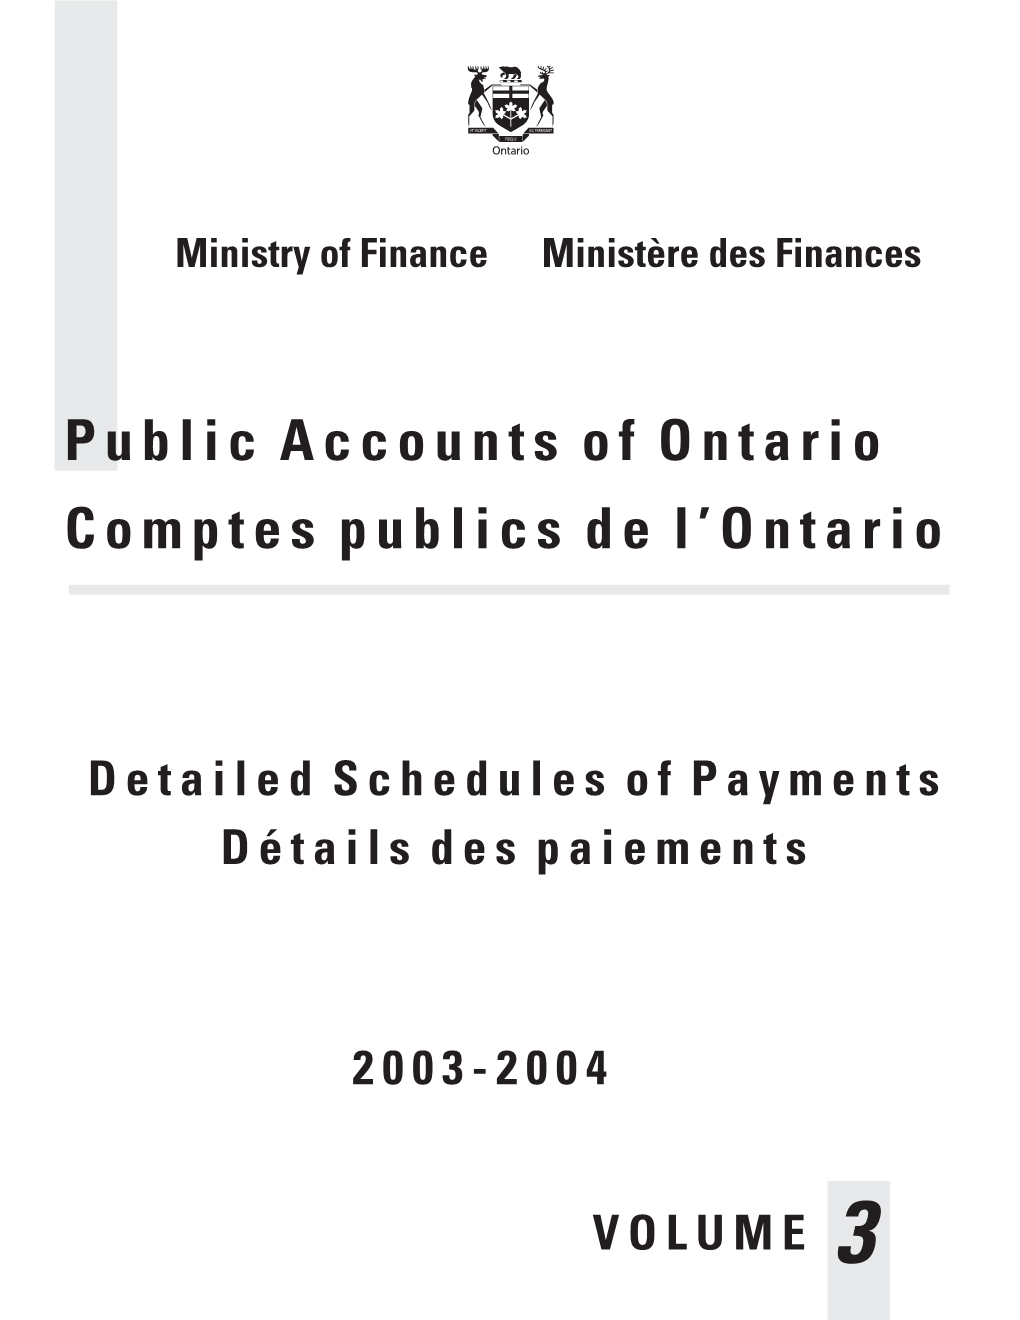 Public Accounts of Ontario 2003-04 Volume 3 / Comptes Publiques De L